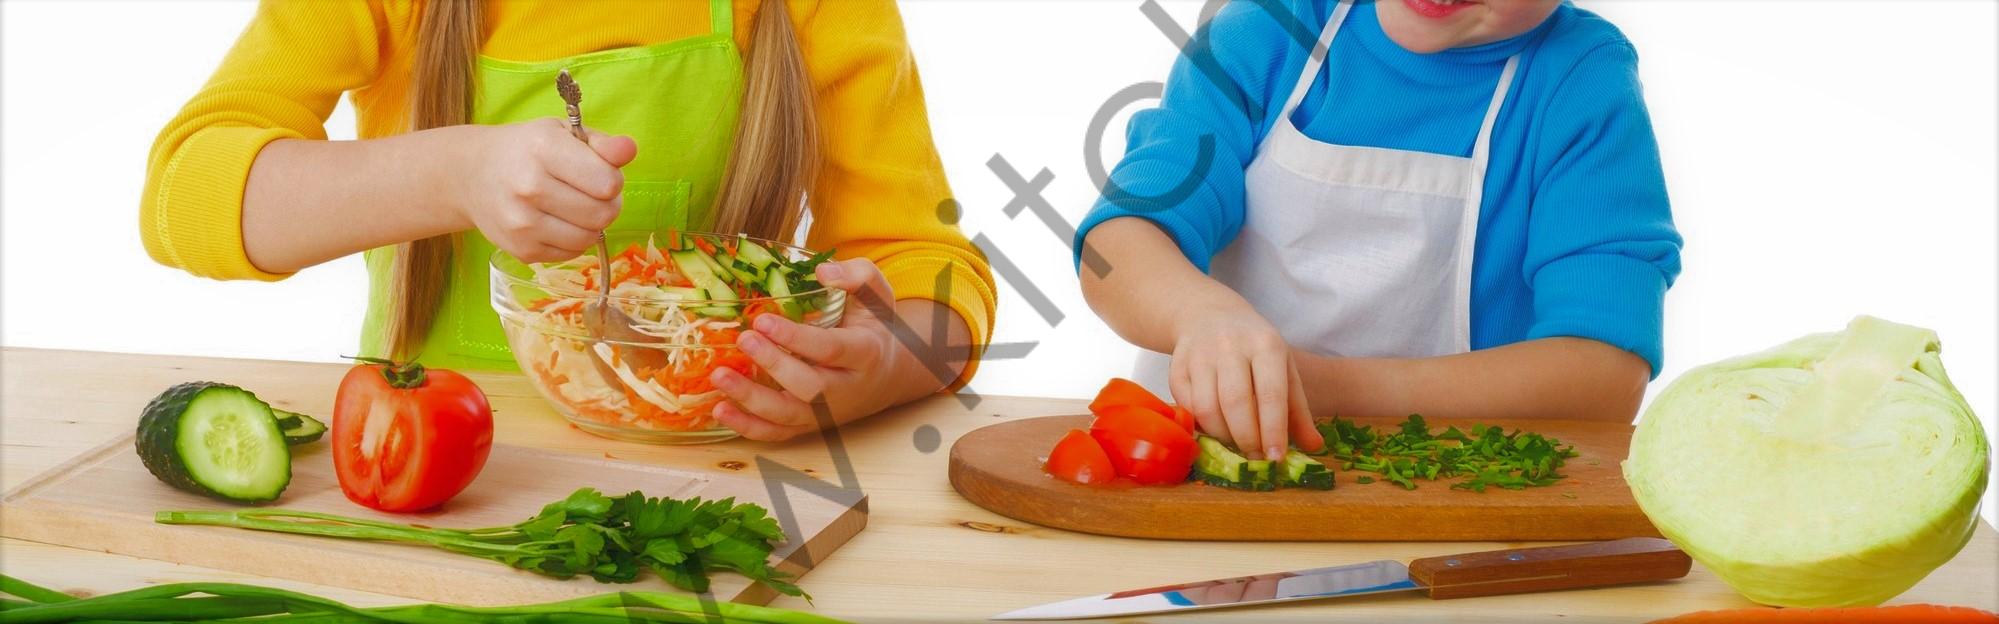 couper les légumes avec les enfants